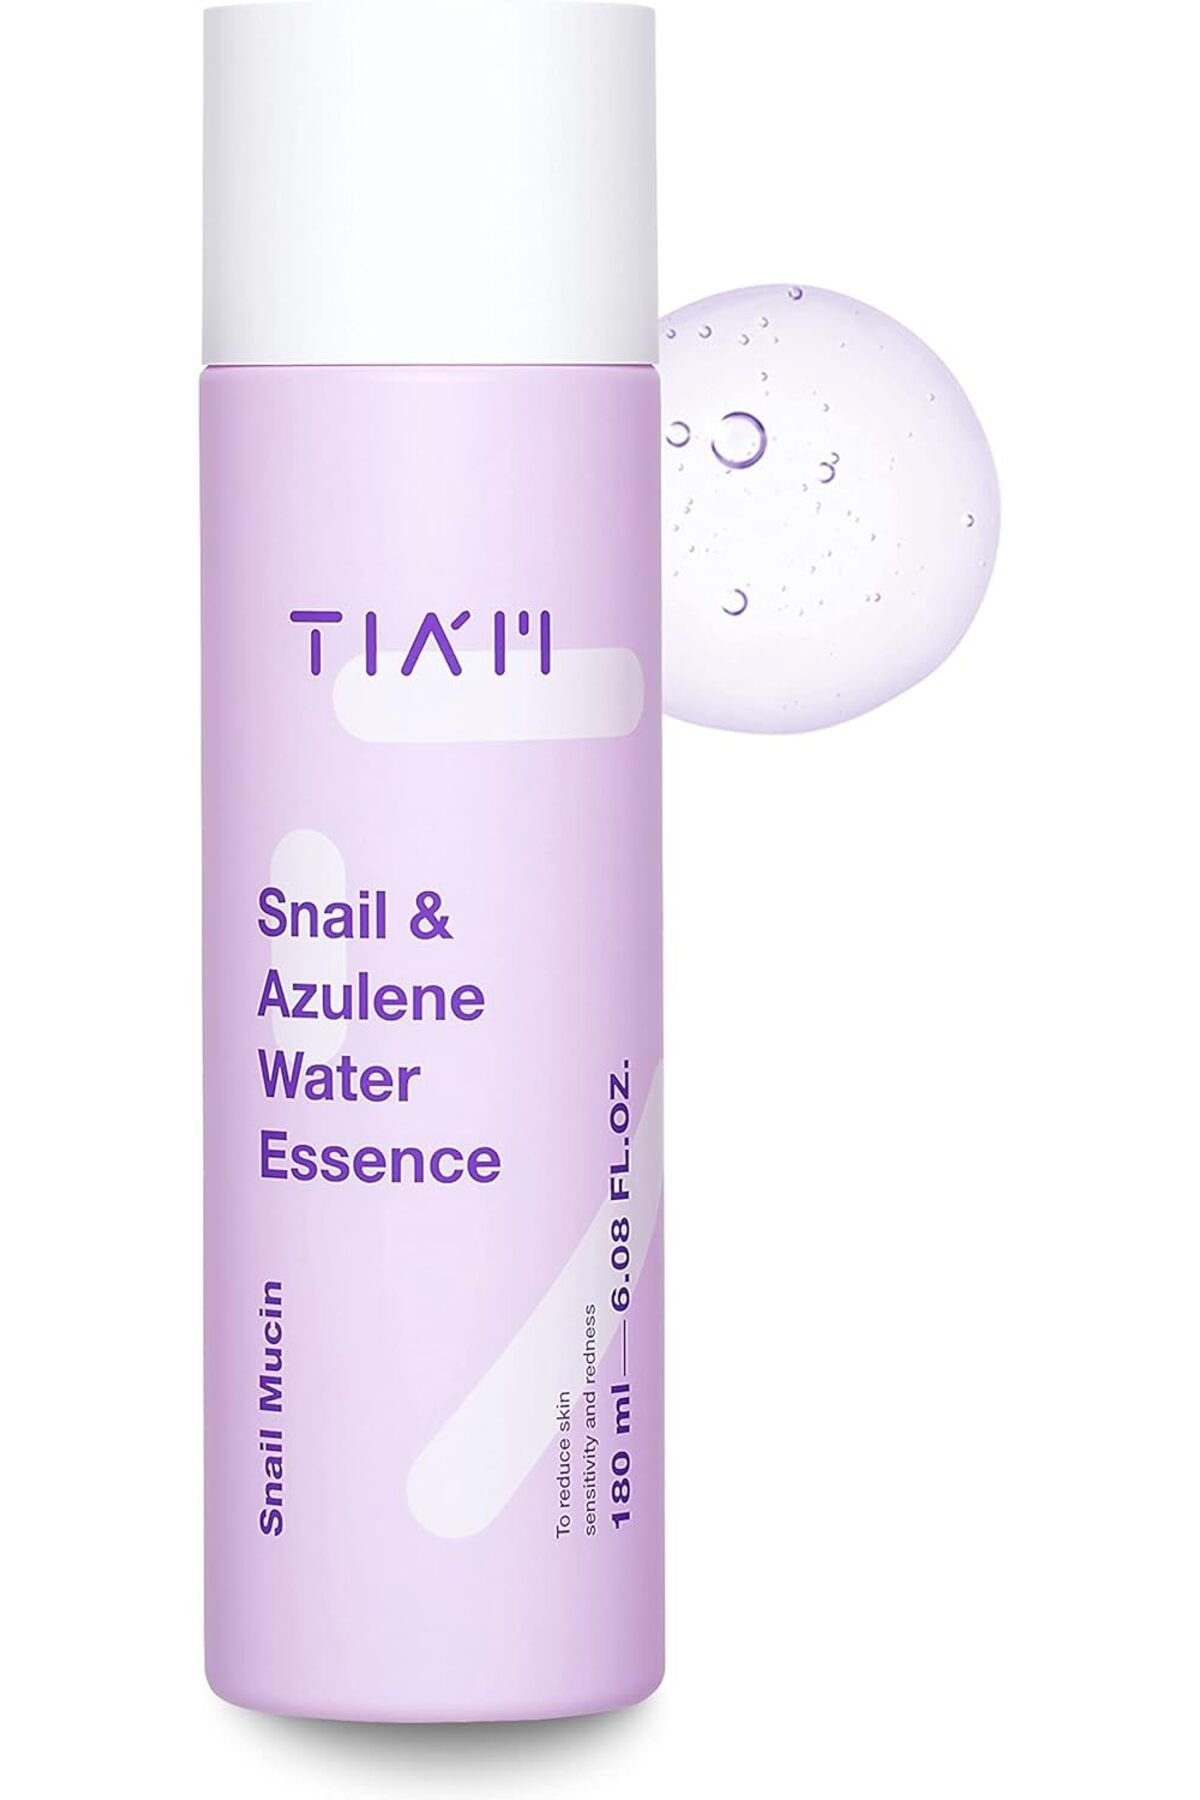 TIA'M Snail & Azulene Water Essence 180ml Nemlendirici Ve Sakinleştirici Esans Tonik